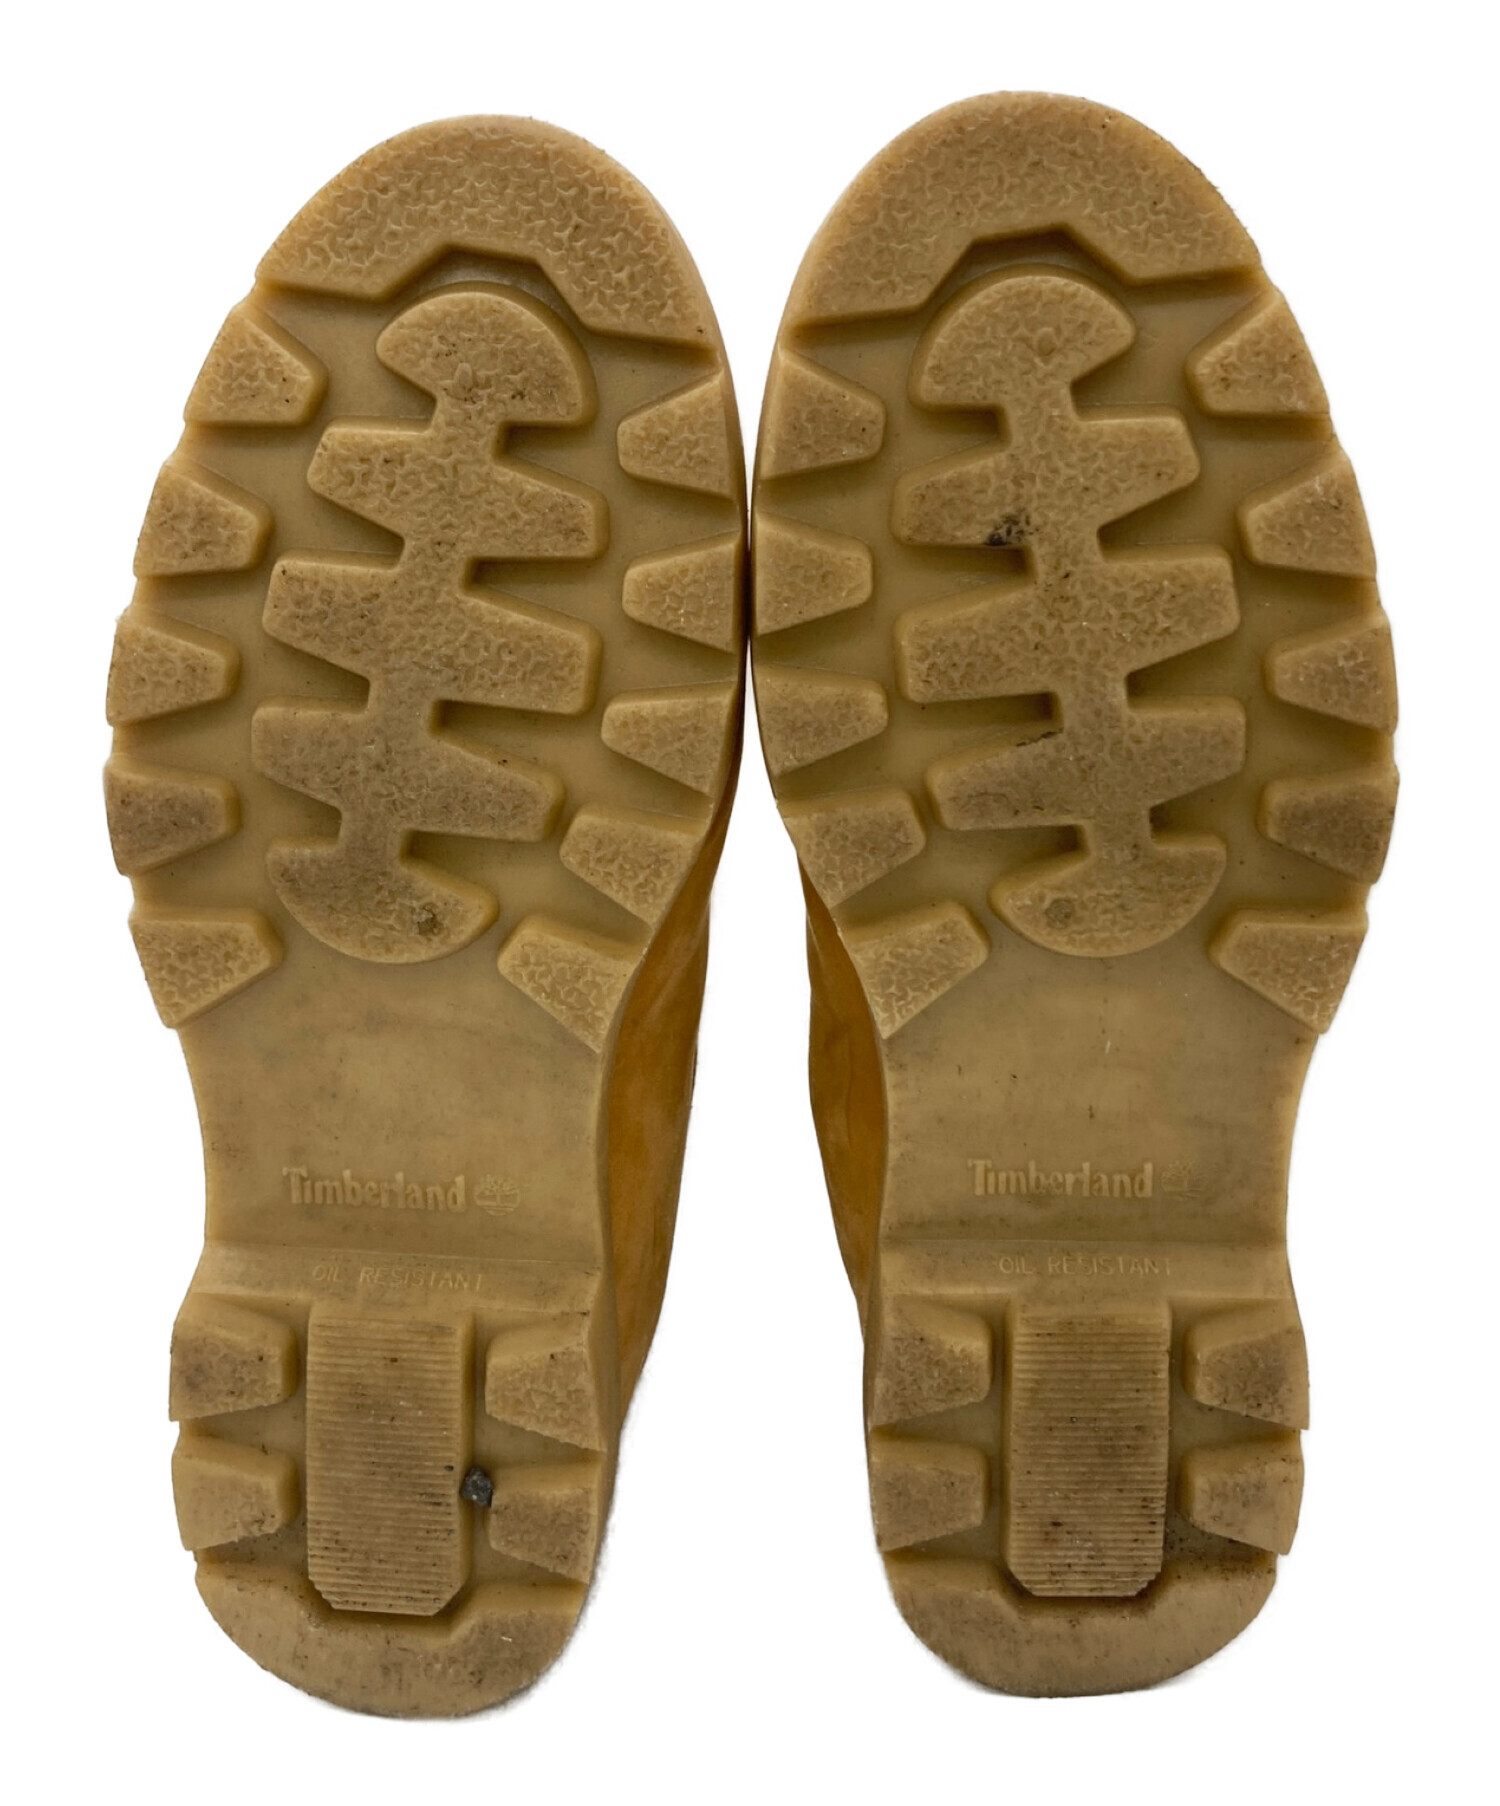 Timberland (ティンバーランド) ブーツ キャメル サイズ:28.5